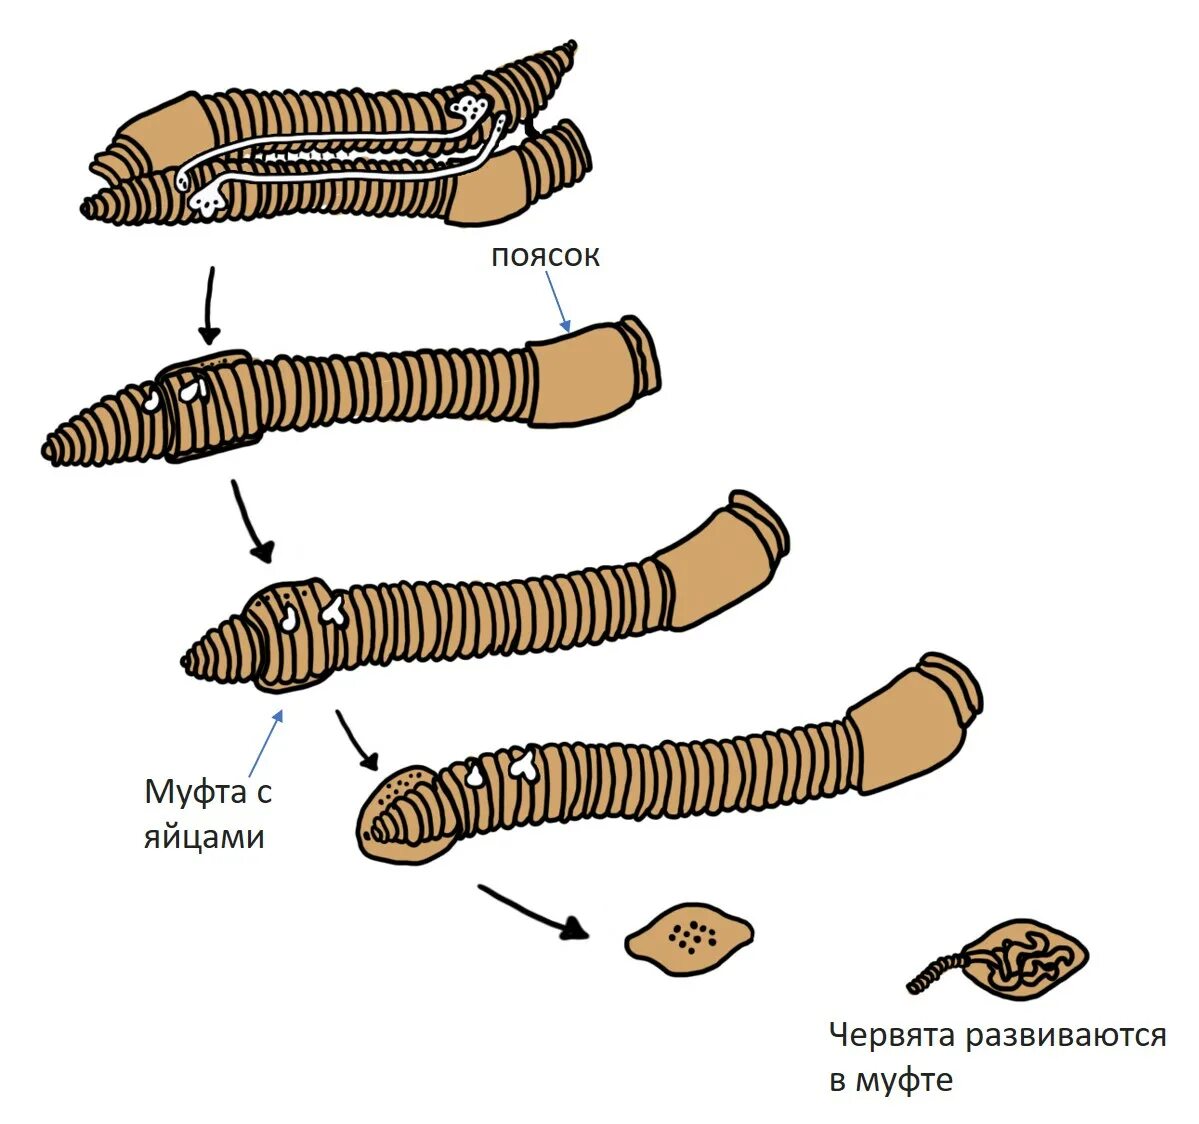 Кольчатые черви половая. Размножение кольчатых червей. Половая система дождевого червя. Схема размножения кольчатых червей.